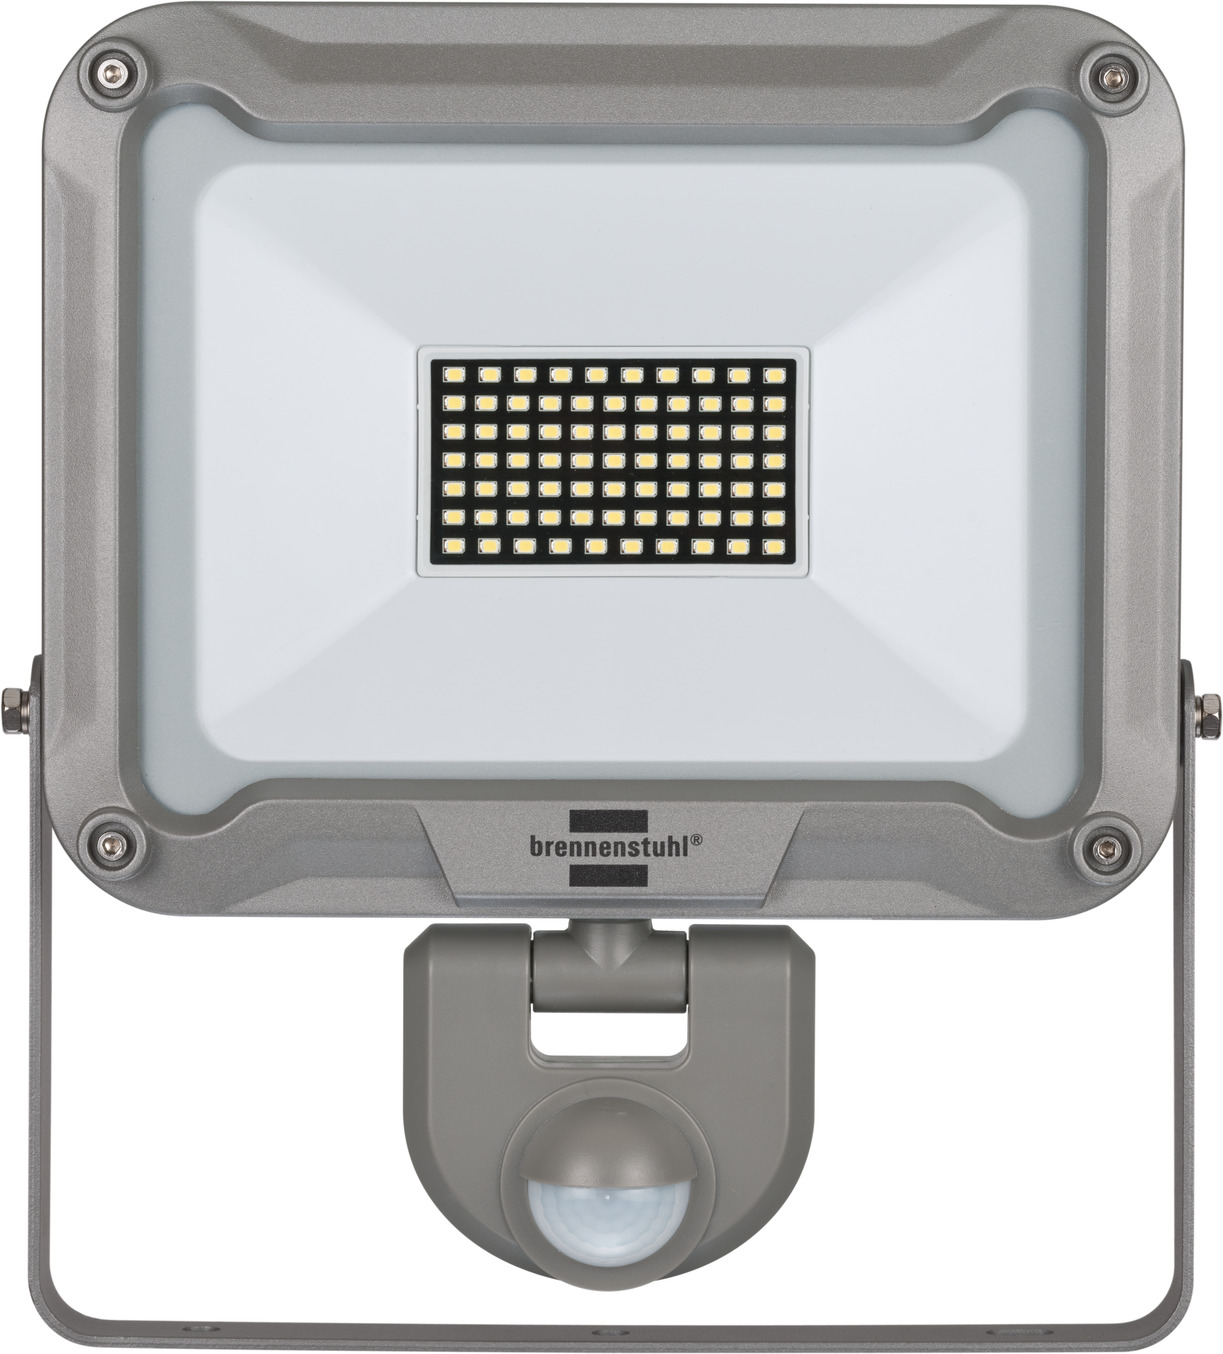 LED Strahler JARO 5050 P mit Infrarot-Bewegungsmelder 4400lm, 50W, IP54 |  brennenstuhl®